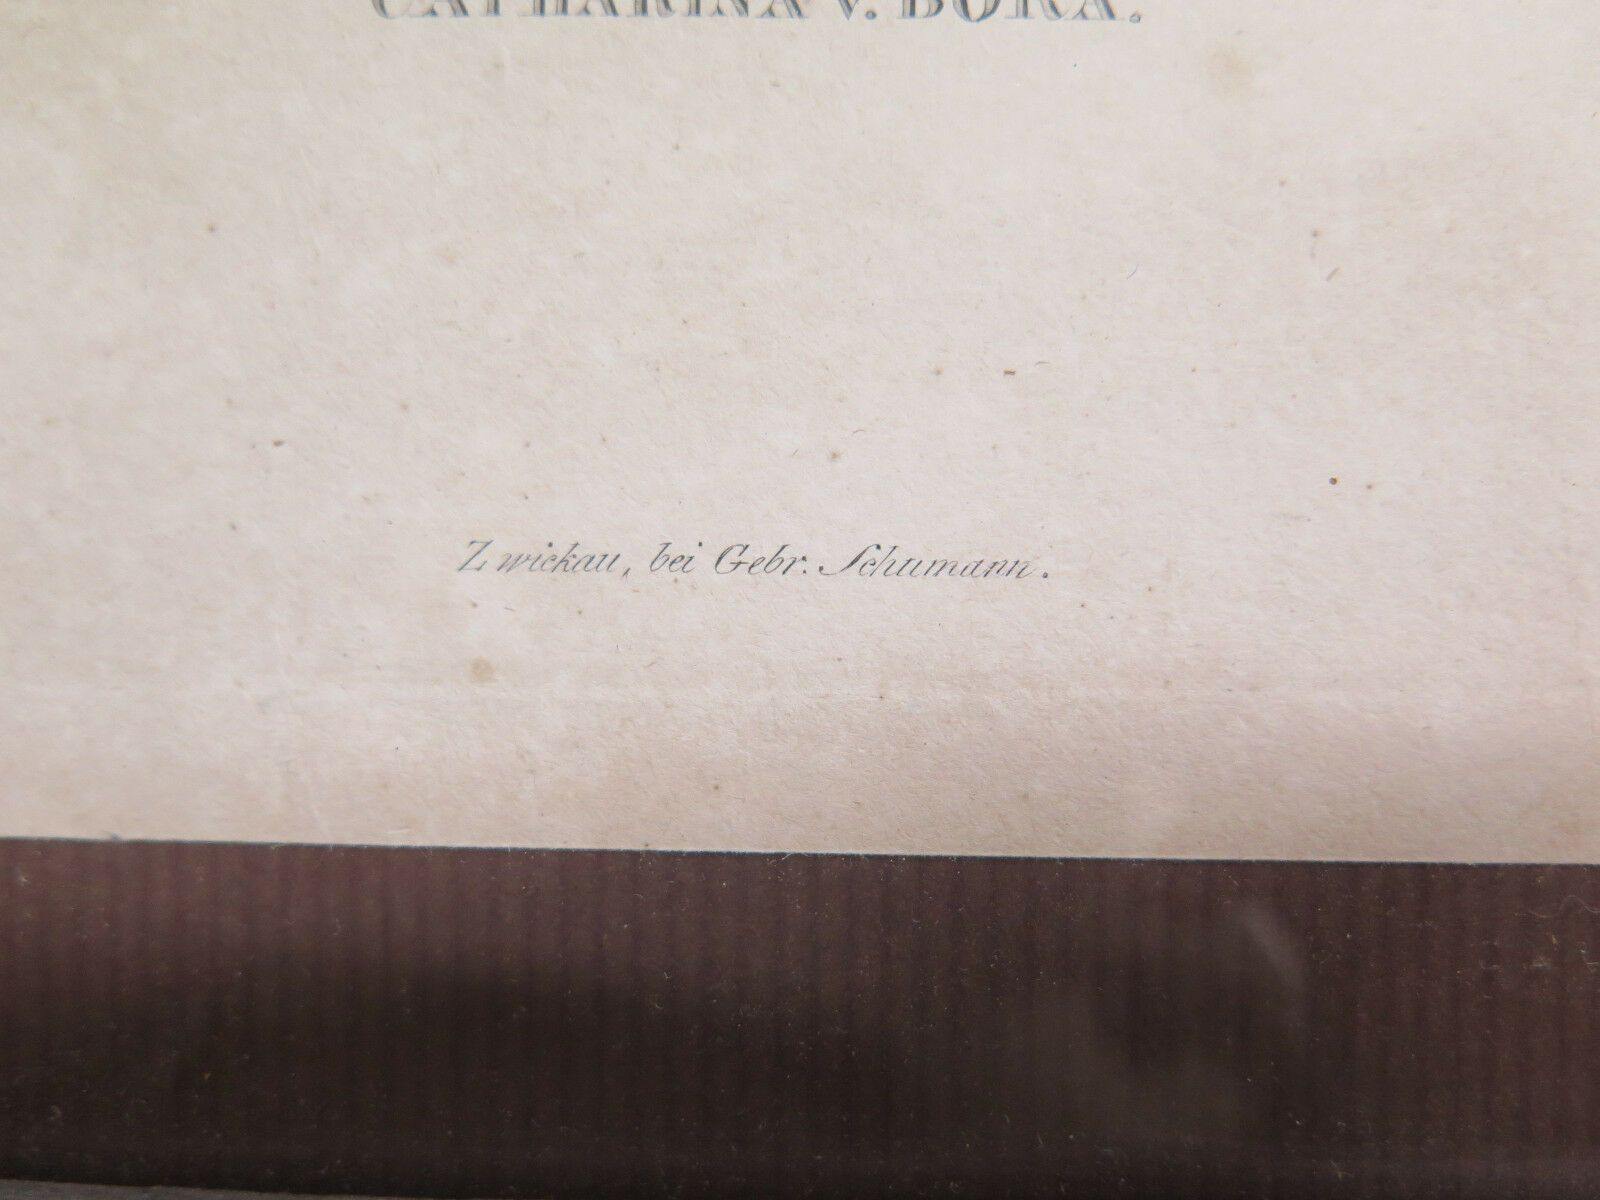 ANTICA INCISIONE STAMPA RITRATTO DI CATERINA BORA Katharina von Bora R116 - Belbello Antiques